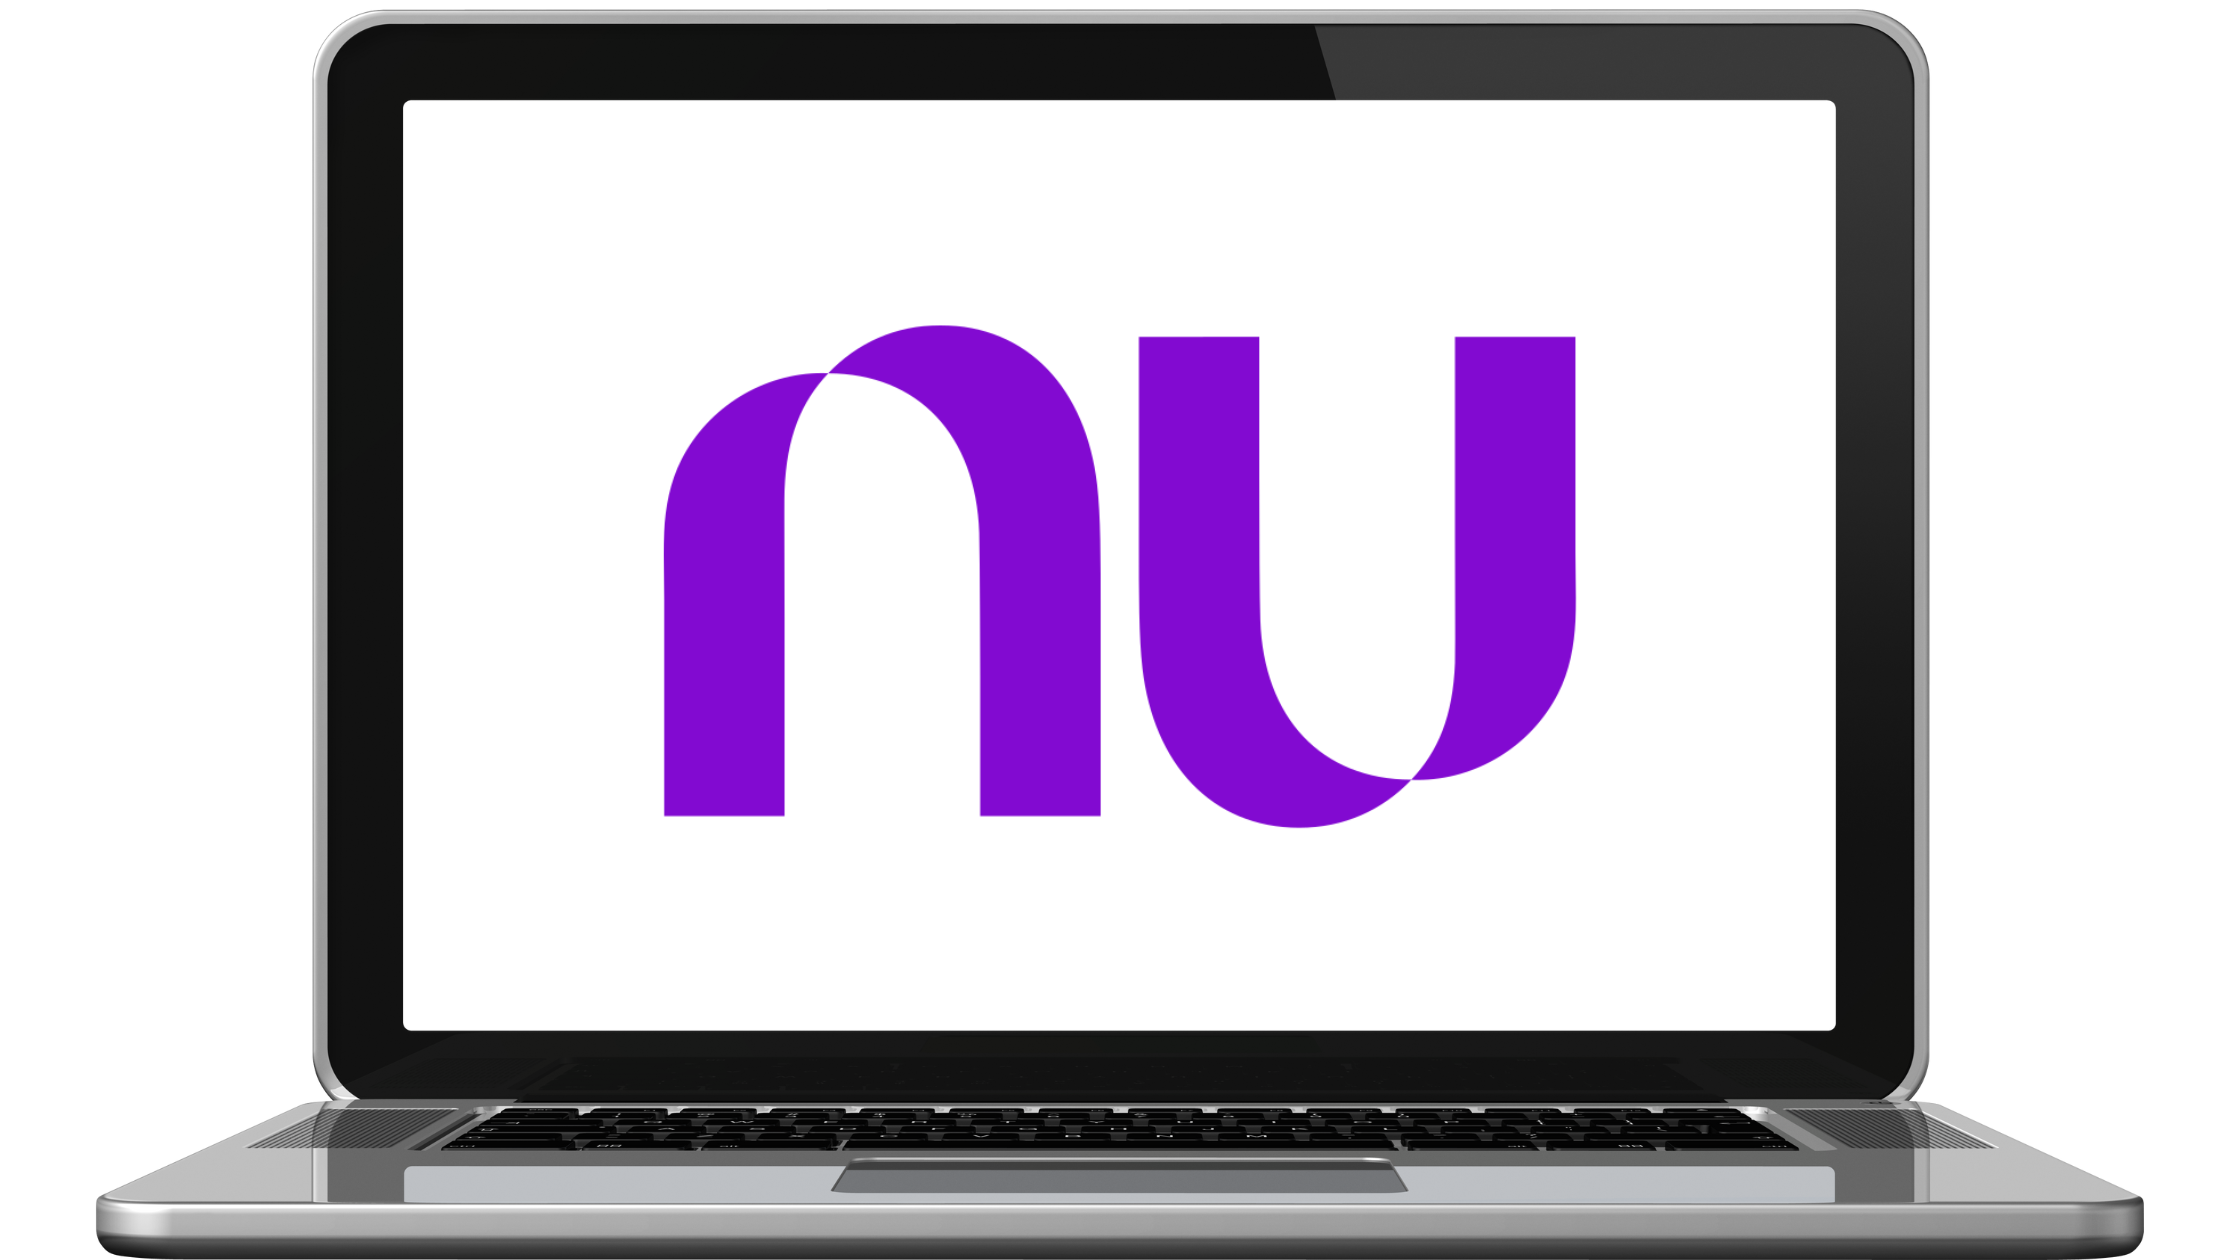 Laptop moderno com código do banco Nubank